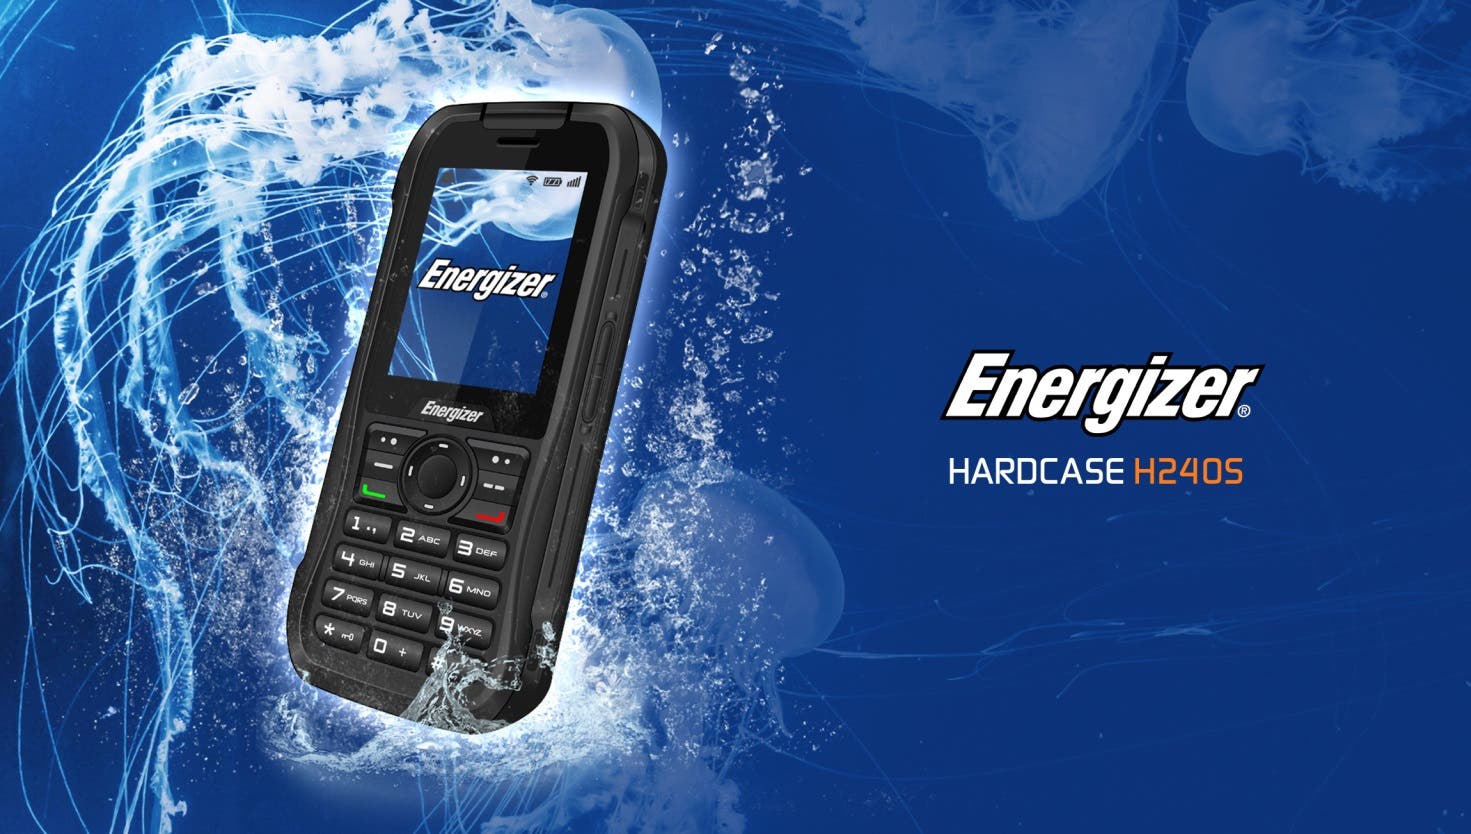 Energizer® HARDCASE H240S